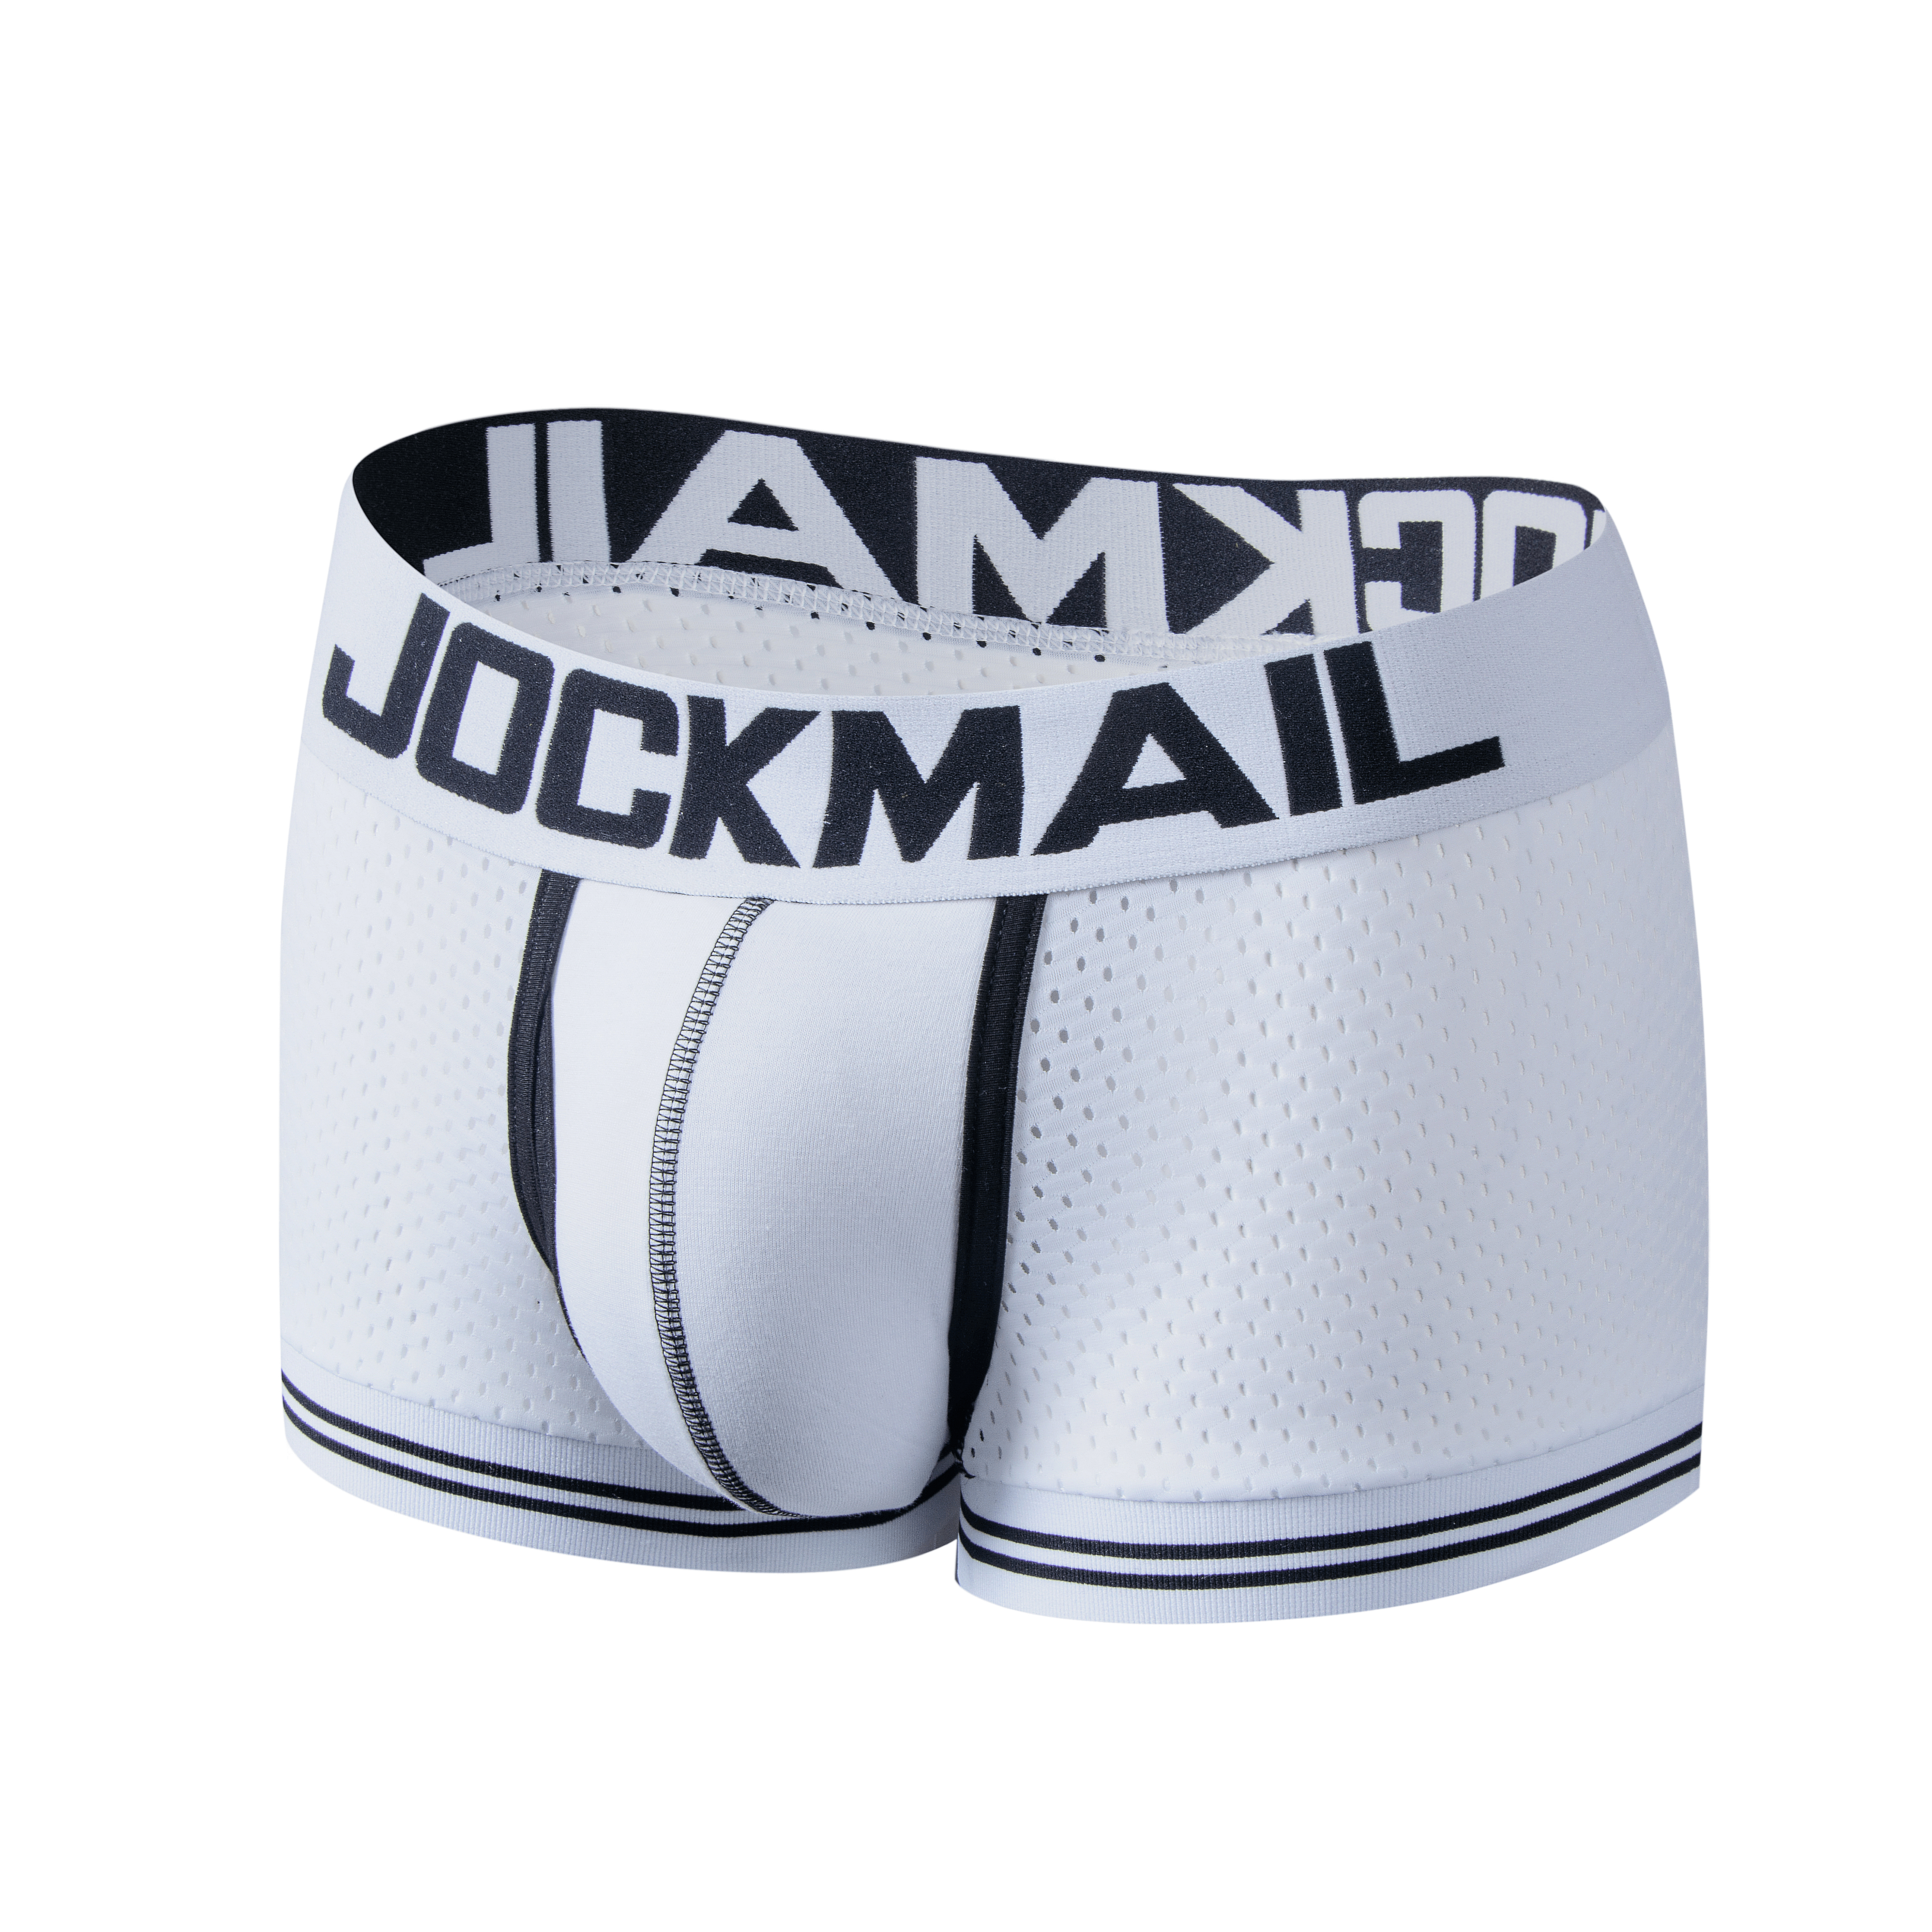 Men's JOCKMAIL JM405 - Cotton/Mesh Boxer